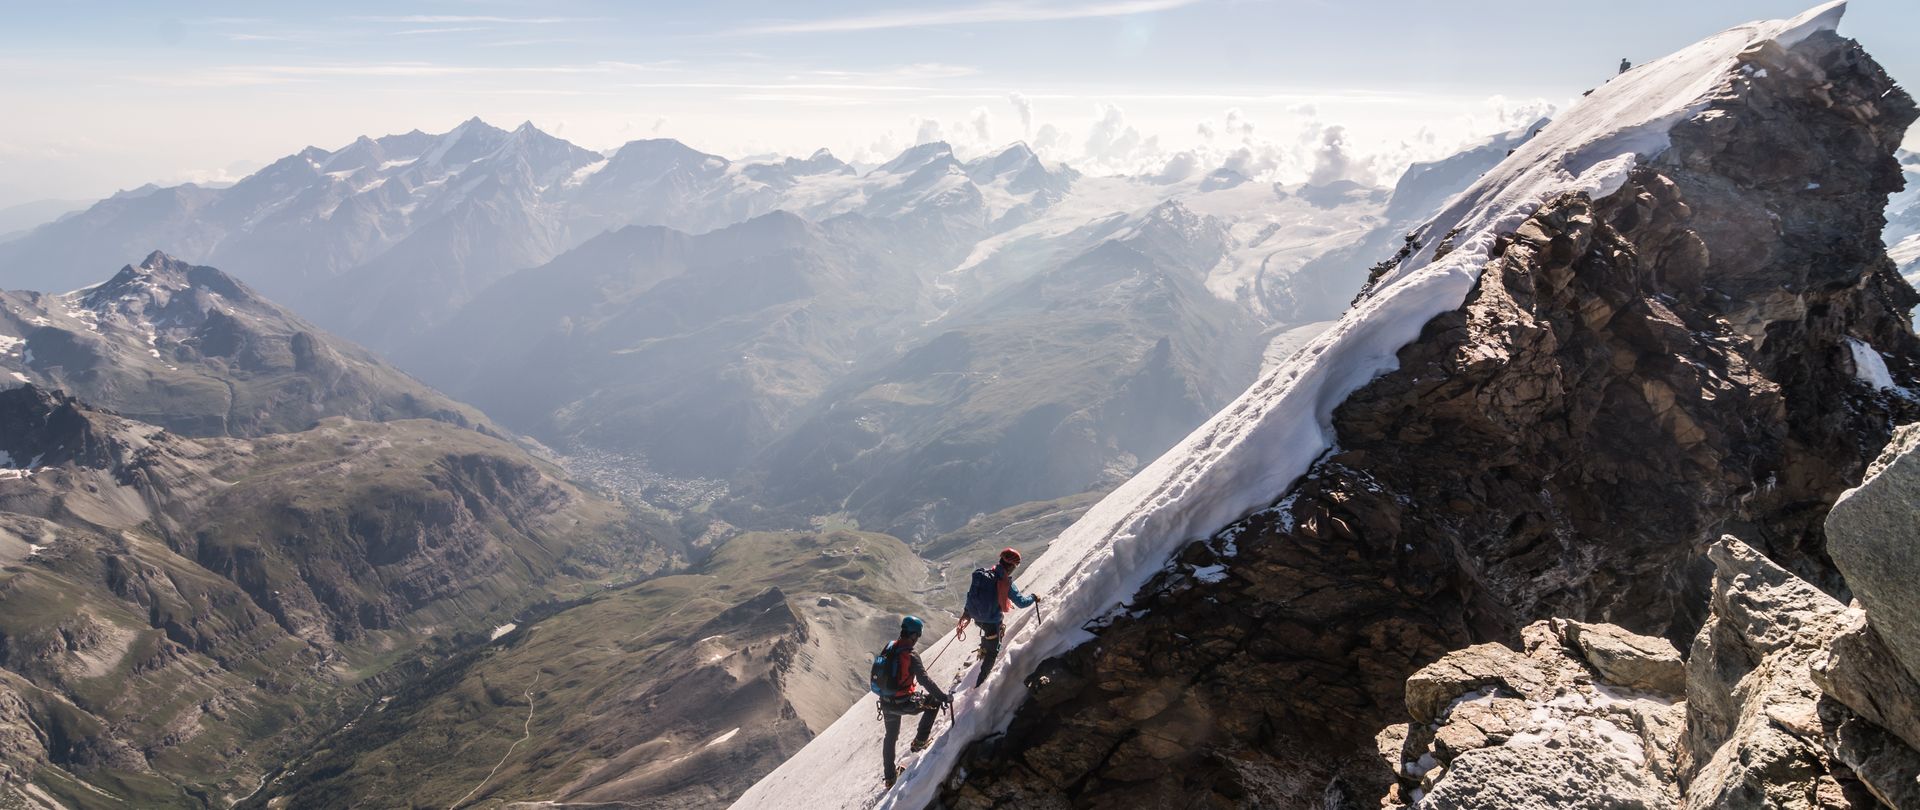 Ascension du Cervin - Matterhorn